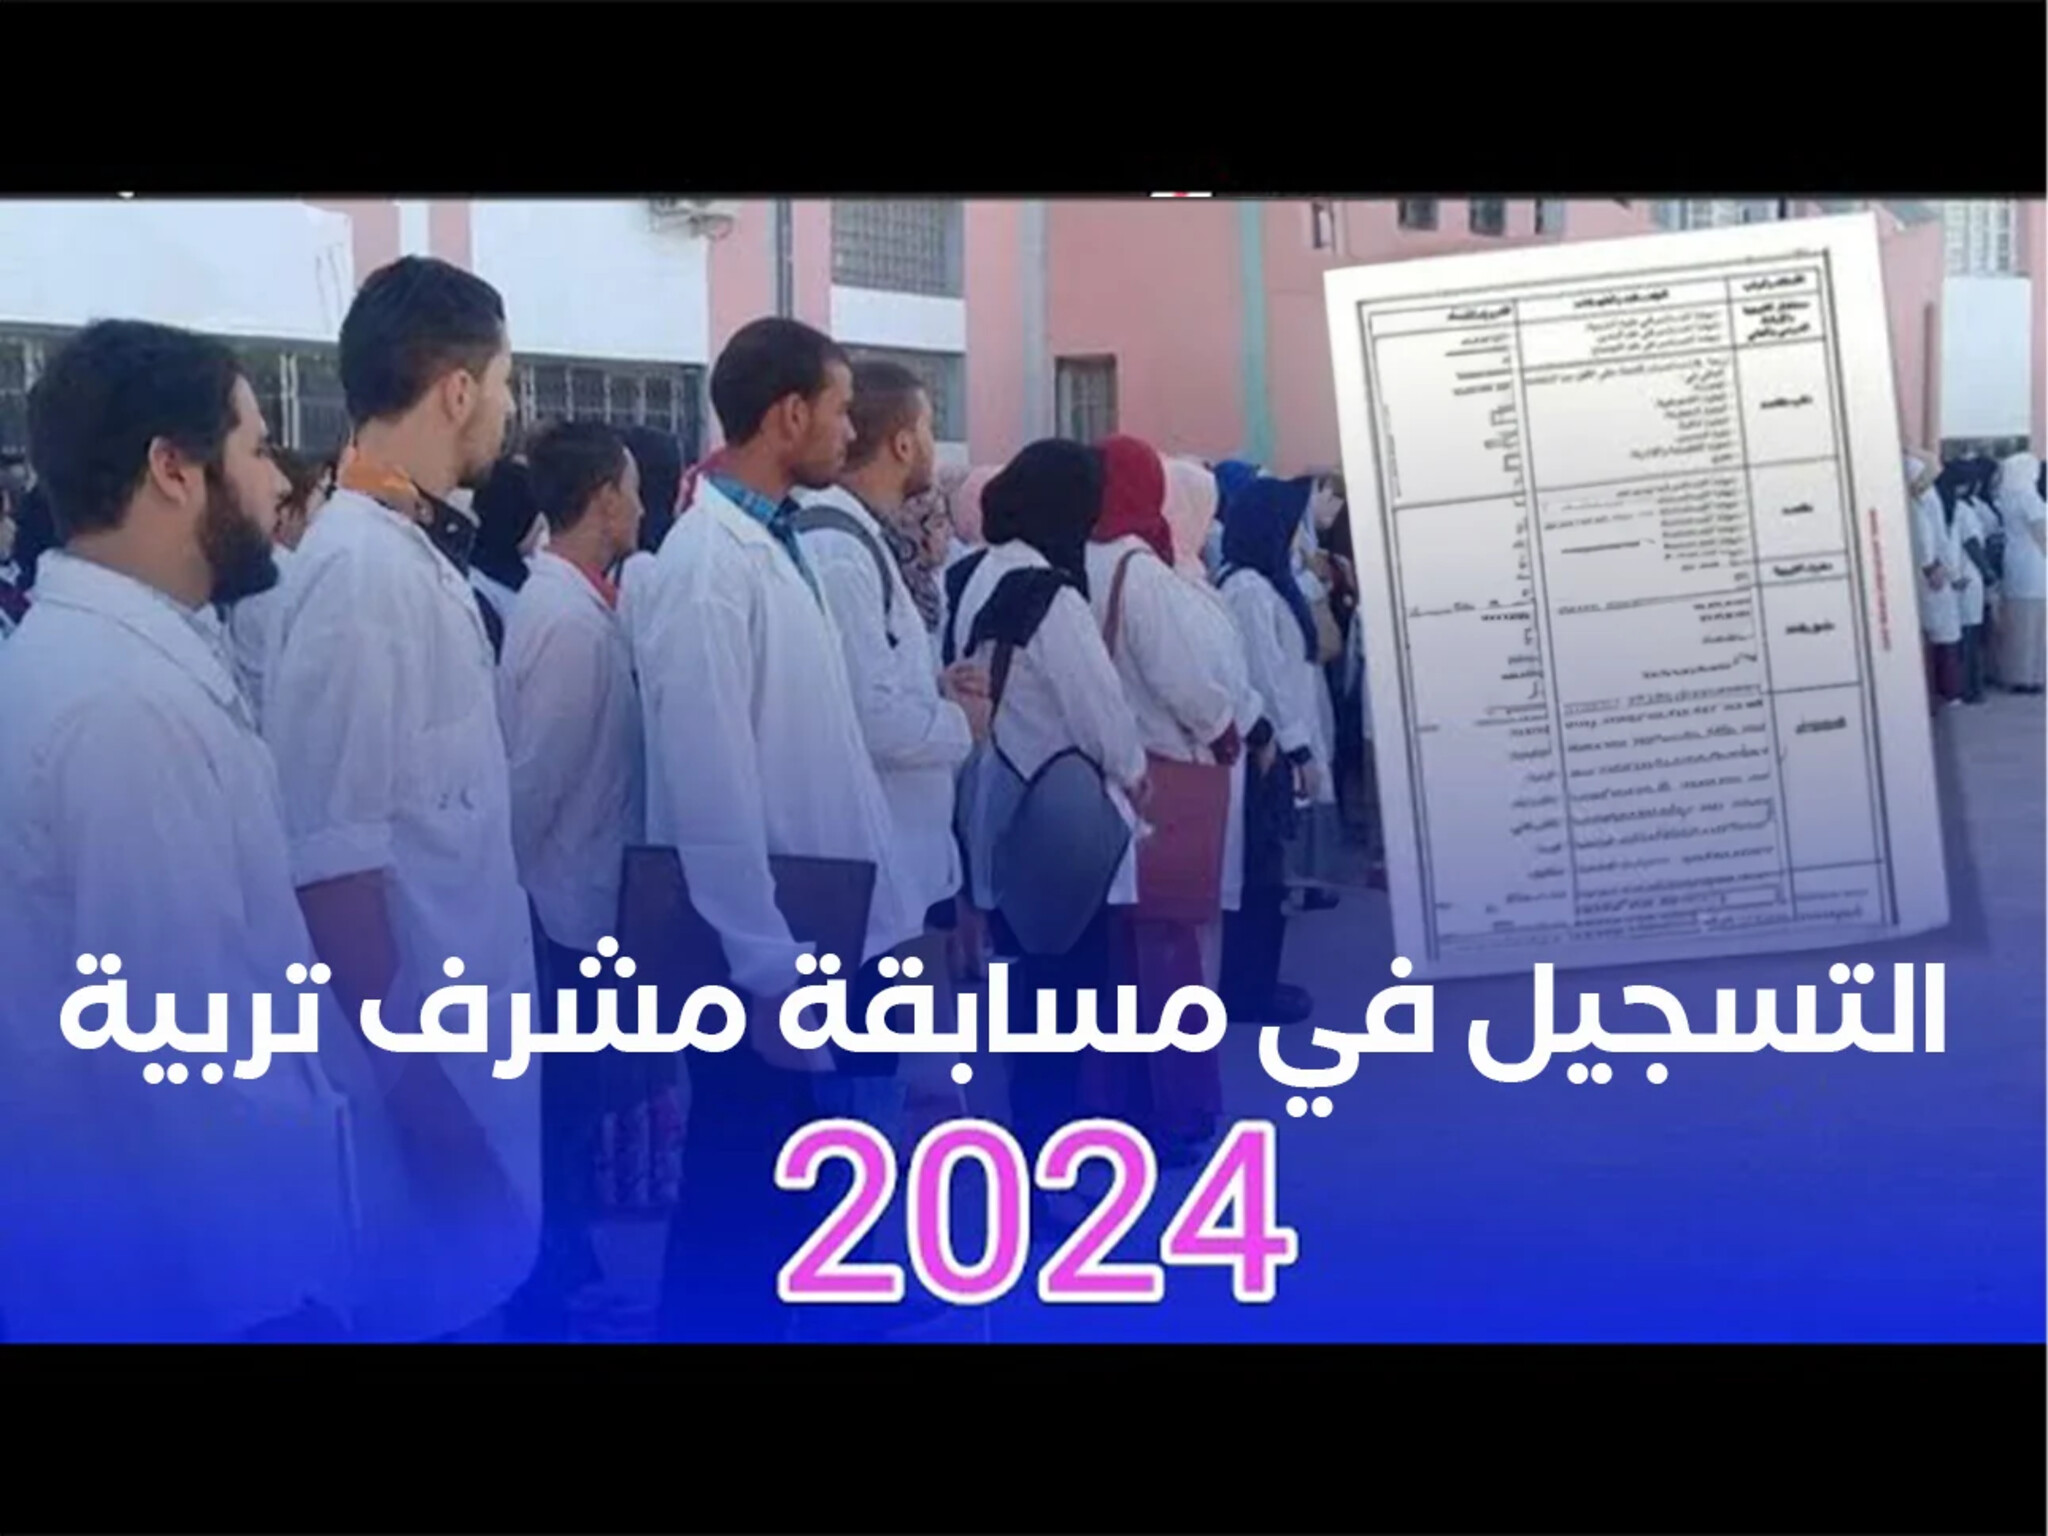 التربية الوطنية تعلن فتح باب التسجيل لتوظيف مشرفي التربية 2024 